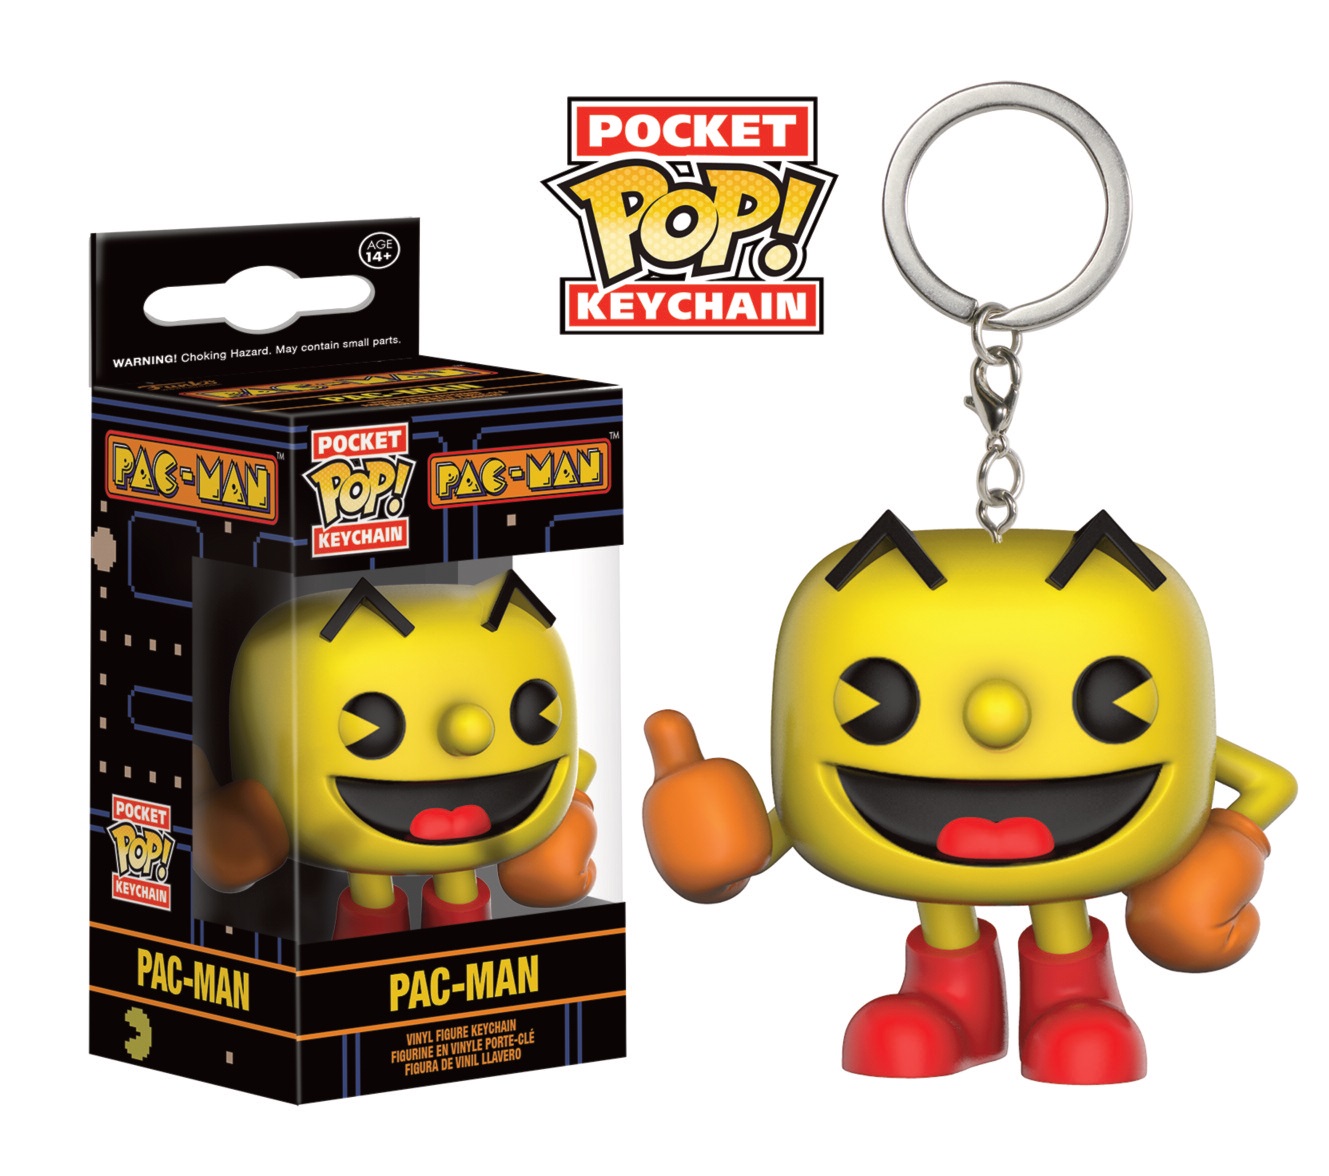 Pac-Man Pop Pocket Pac-Man